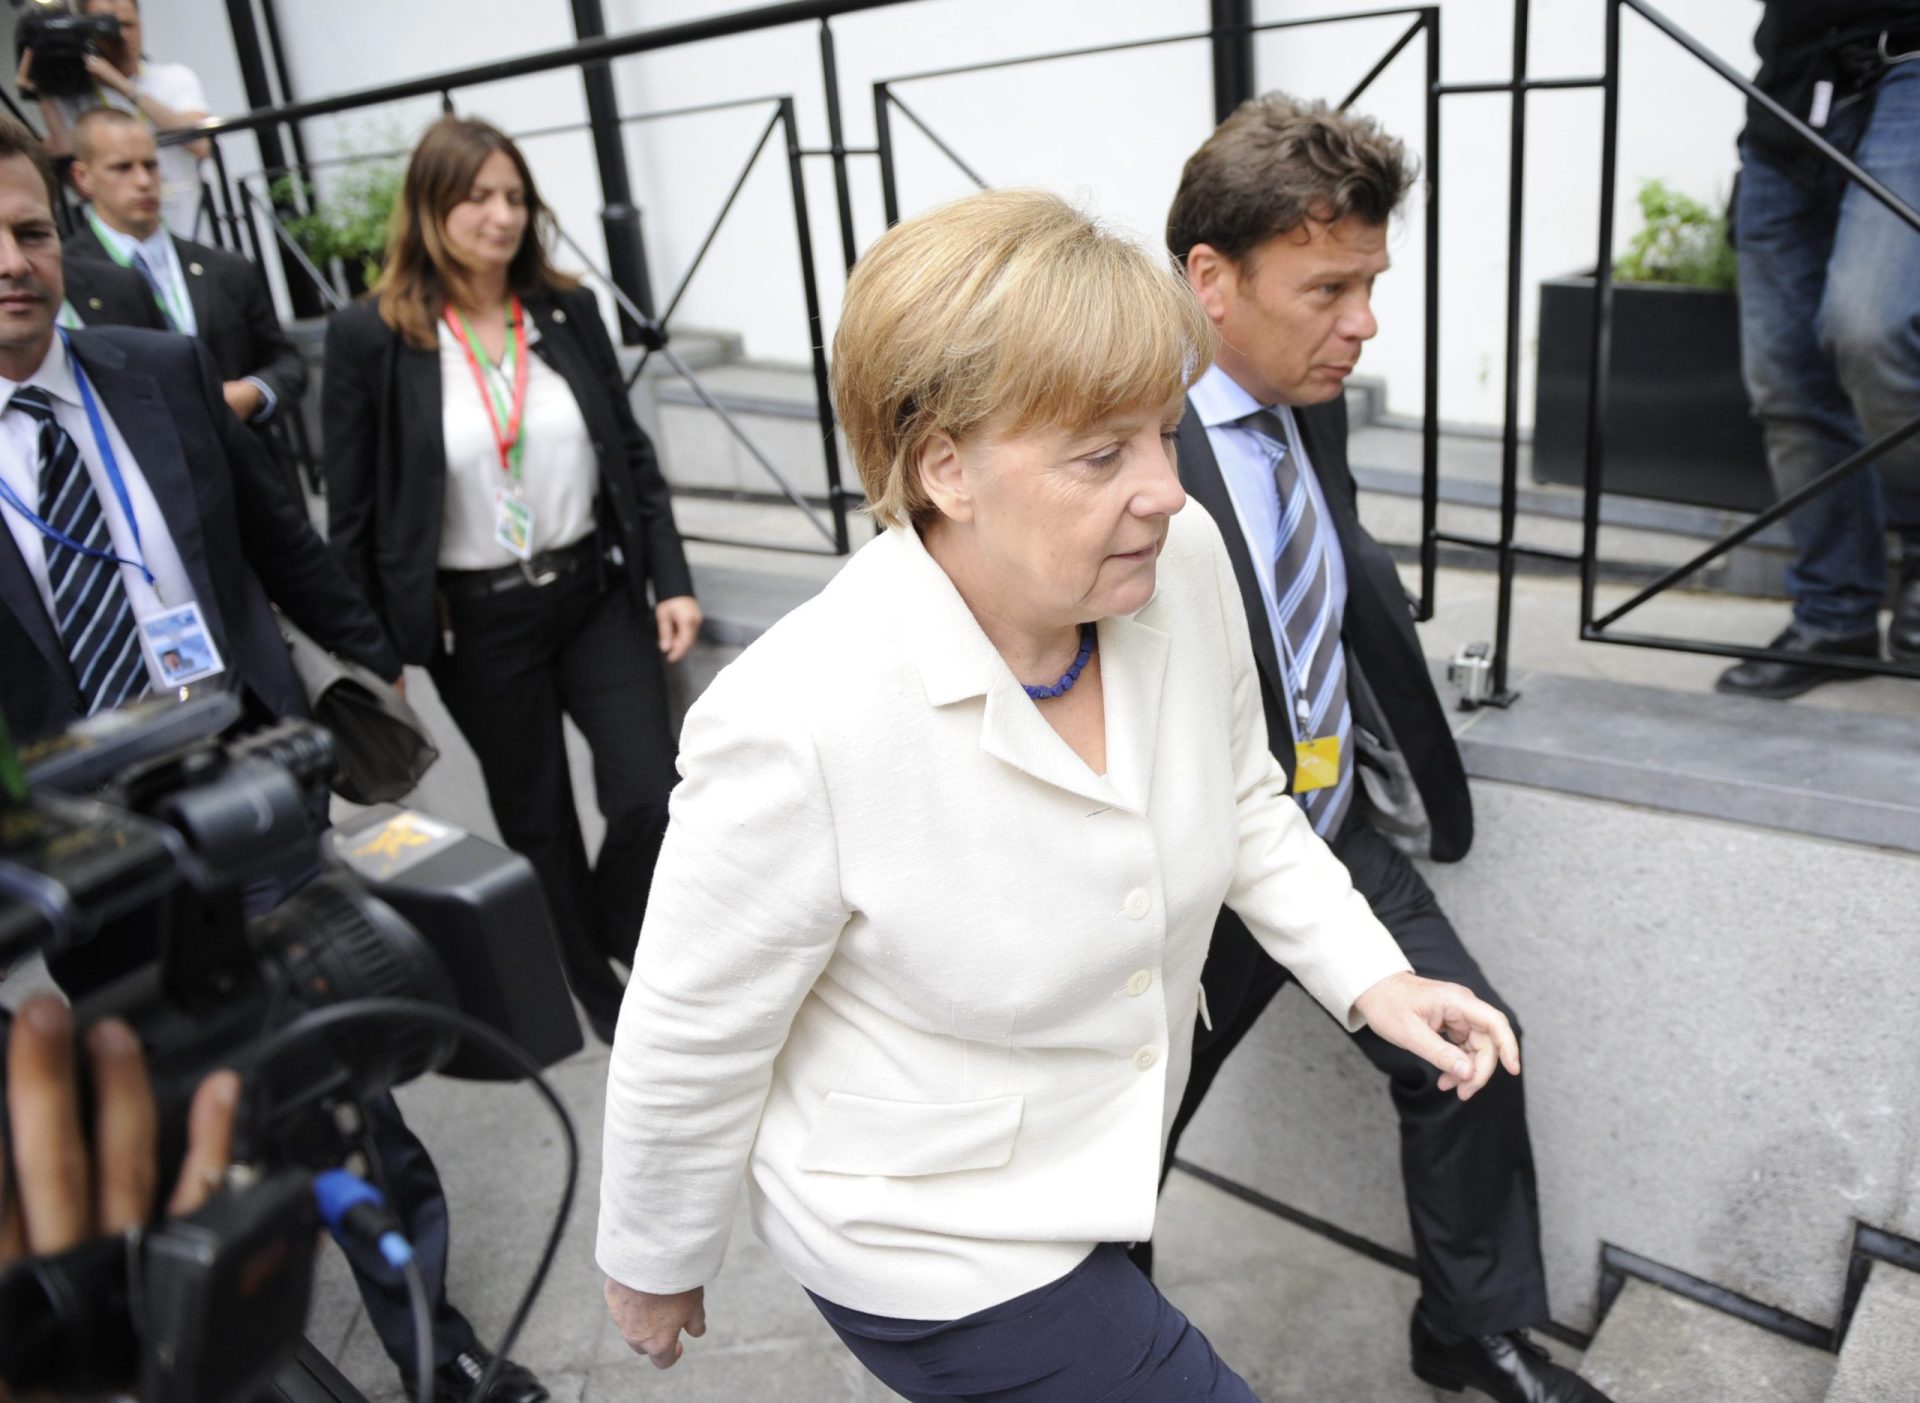 Grécia. Merkel duvida, mas Juncker e Hollande lutarão até ao último “milésimo de segundo”